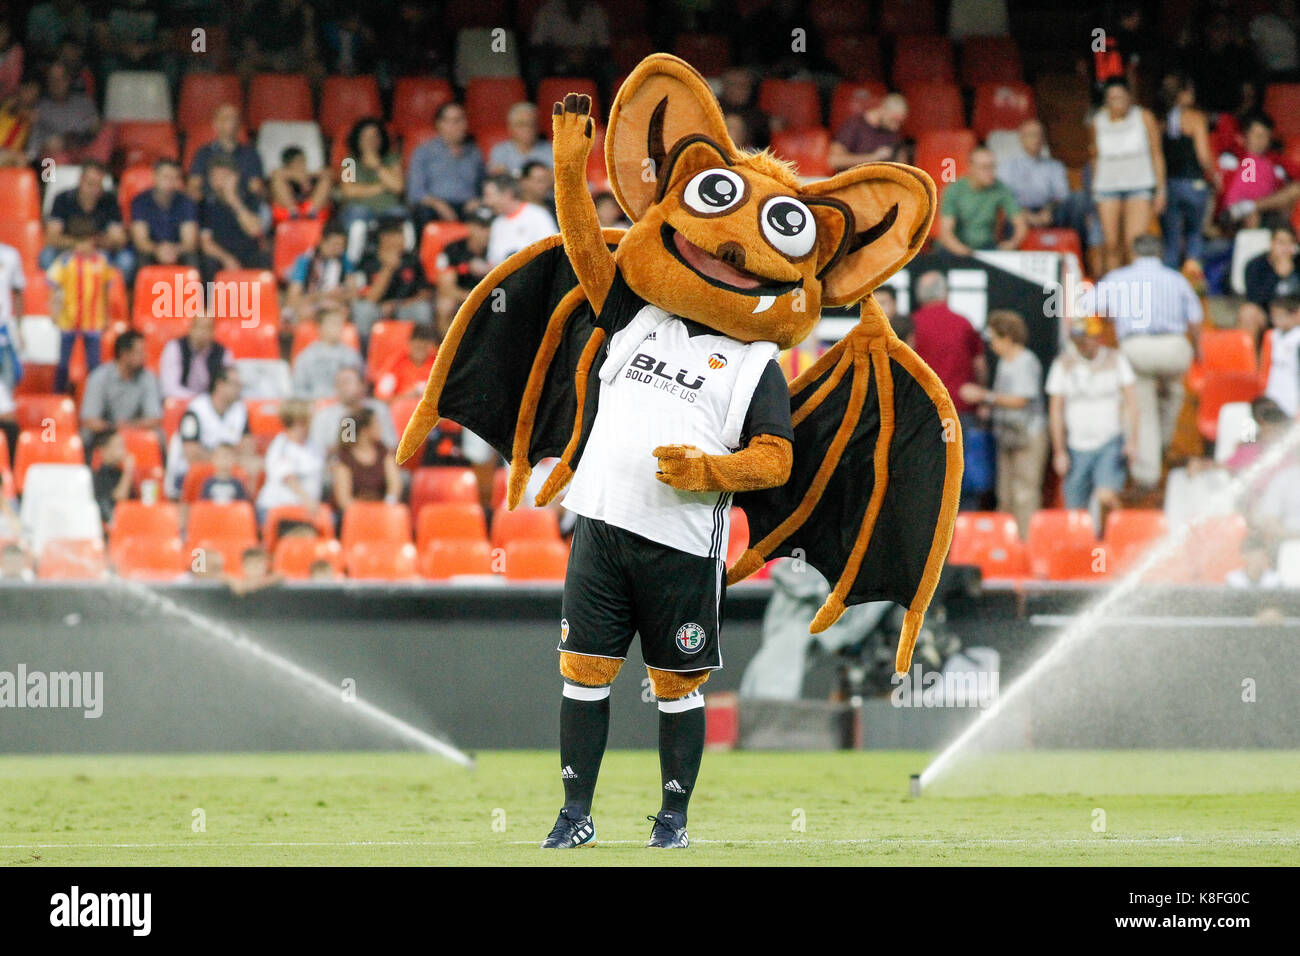 Mascota del Valencia CF ante el Santander Liga (la liga) partido jugado en  el estadio de mestalla entre el Valencia CF y el Málaga CF el 19 de  septiembre de 2017 Fotografía